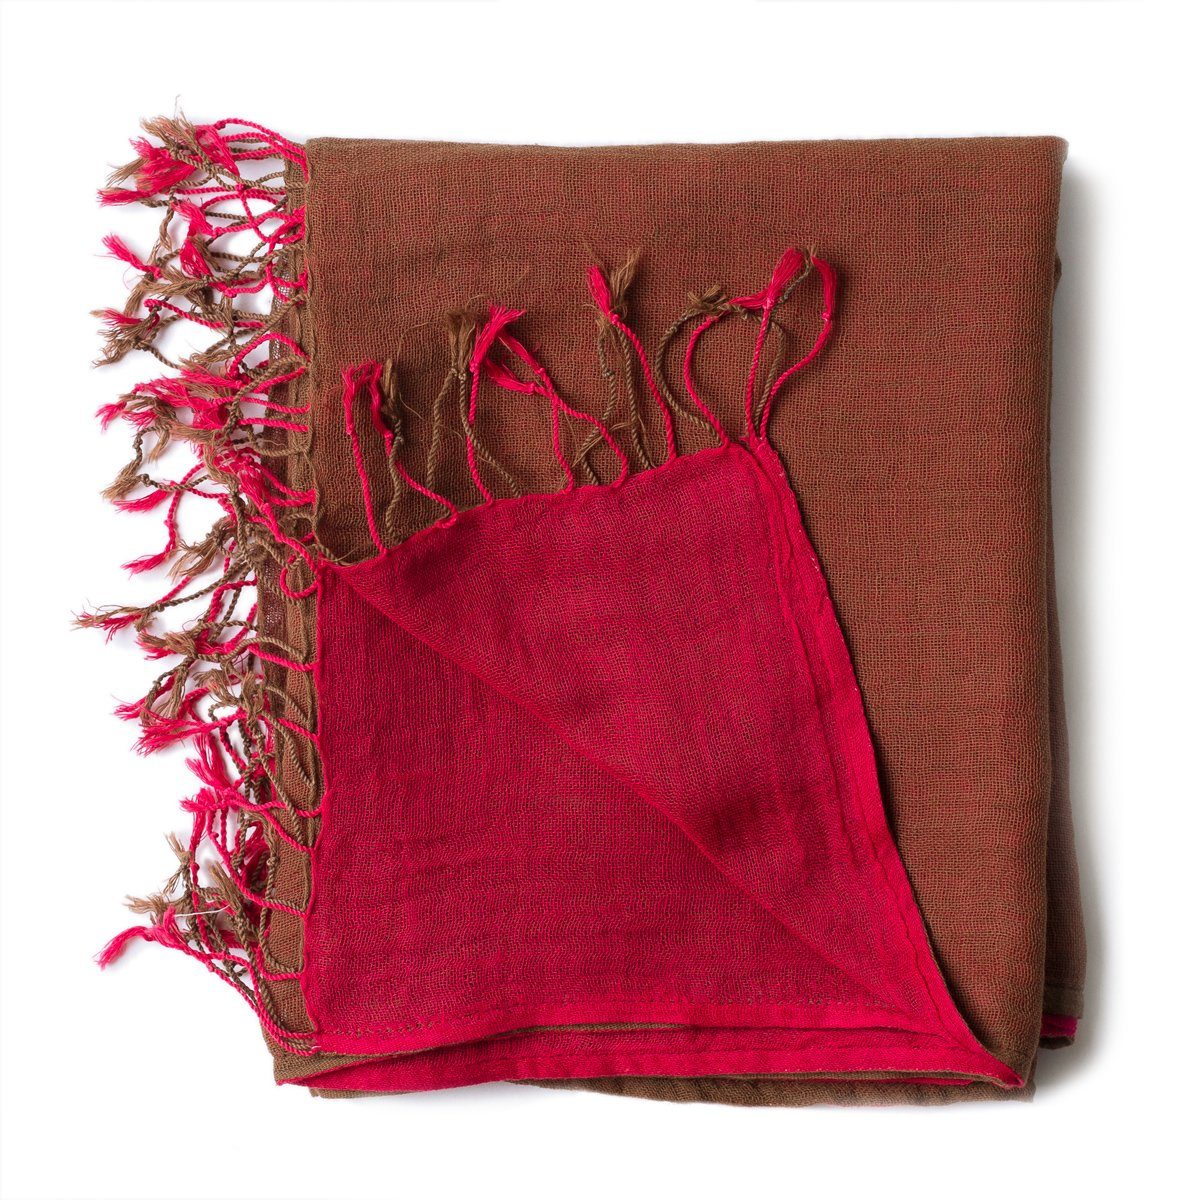 PANASIAM Halstuch elegantes Schultertuch zweifarbig auch als Schal oder Stola tragbar, in schönen farbigen Designs mit kleinen Fransen aus Baumwolle rot braun